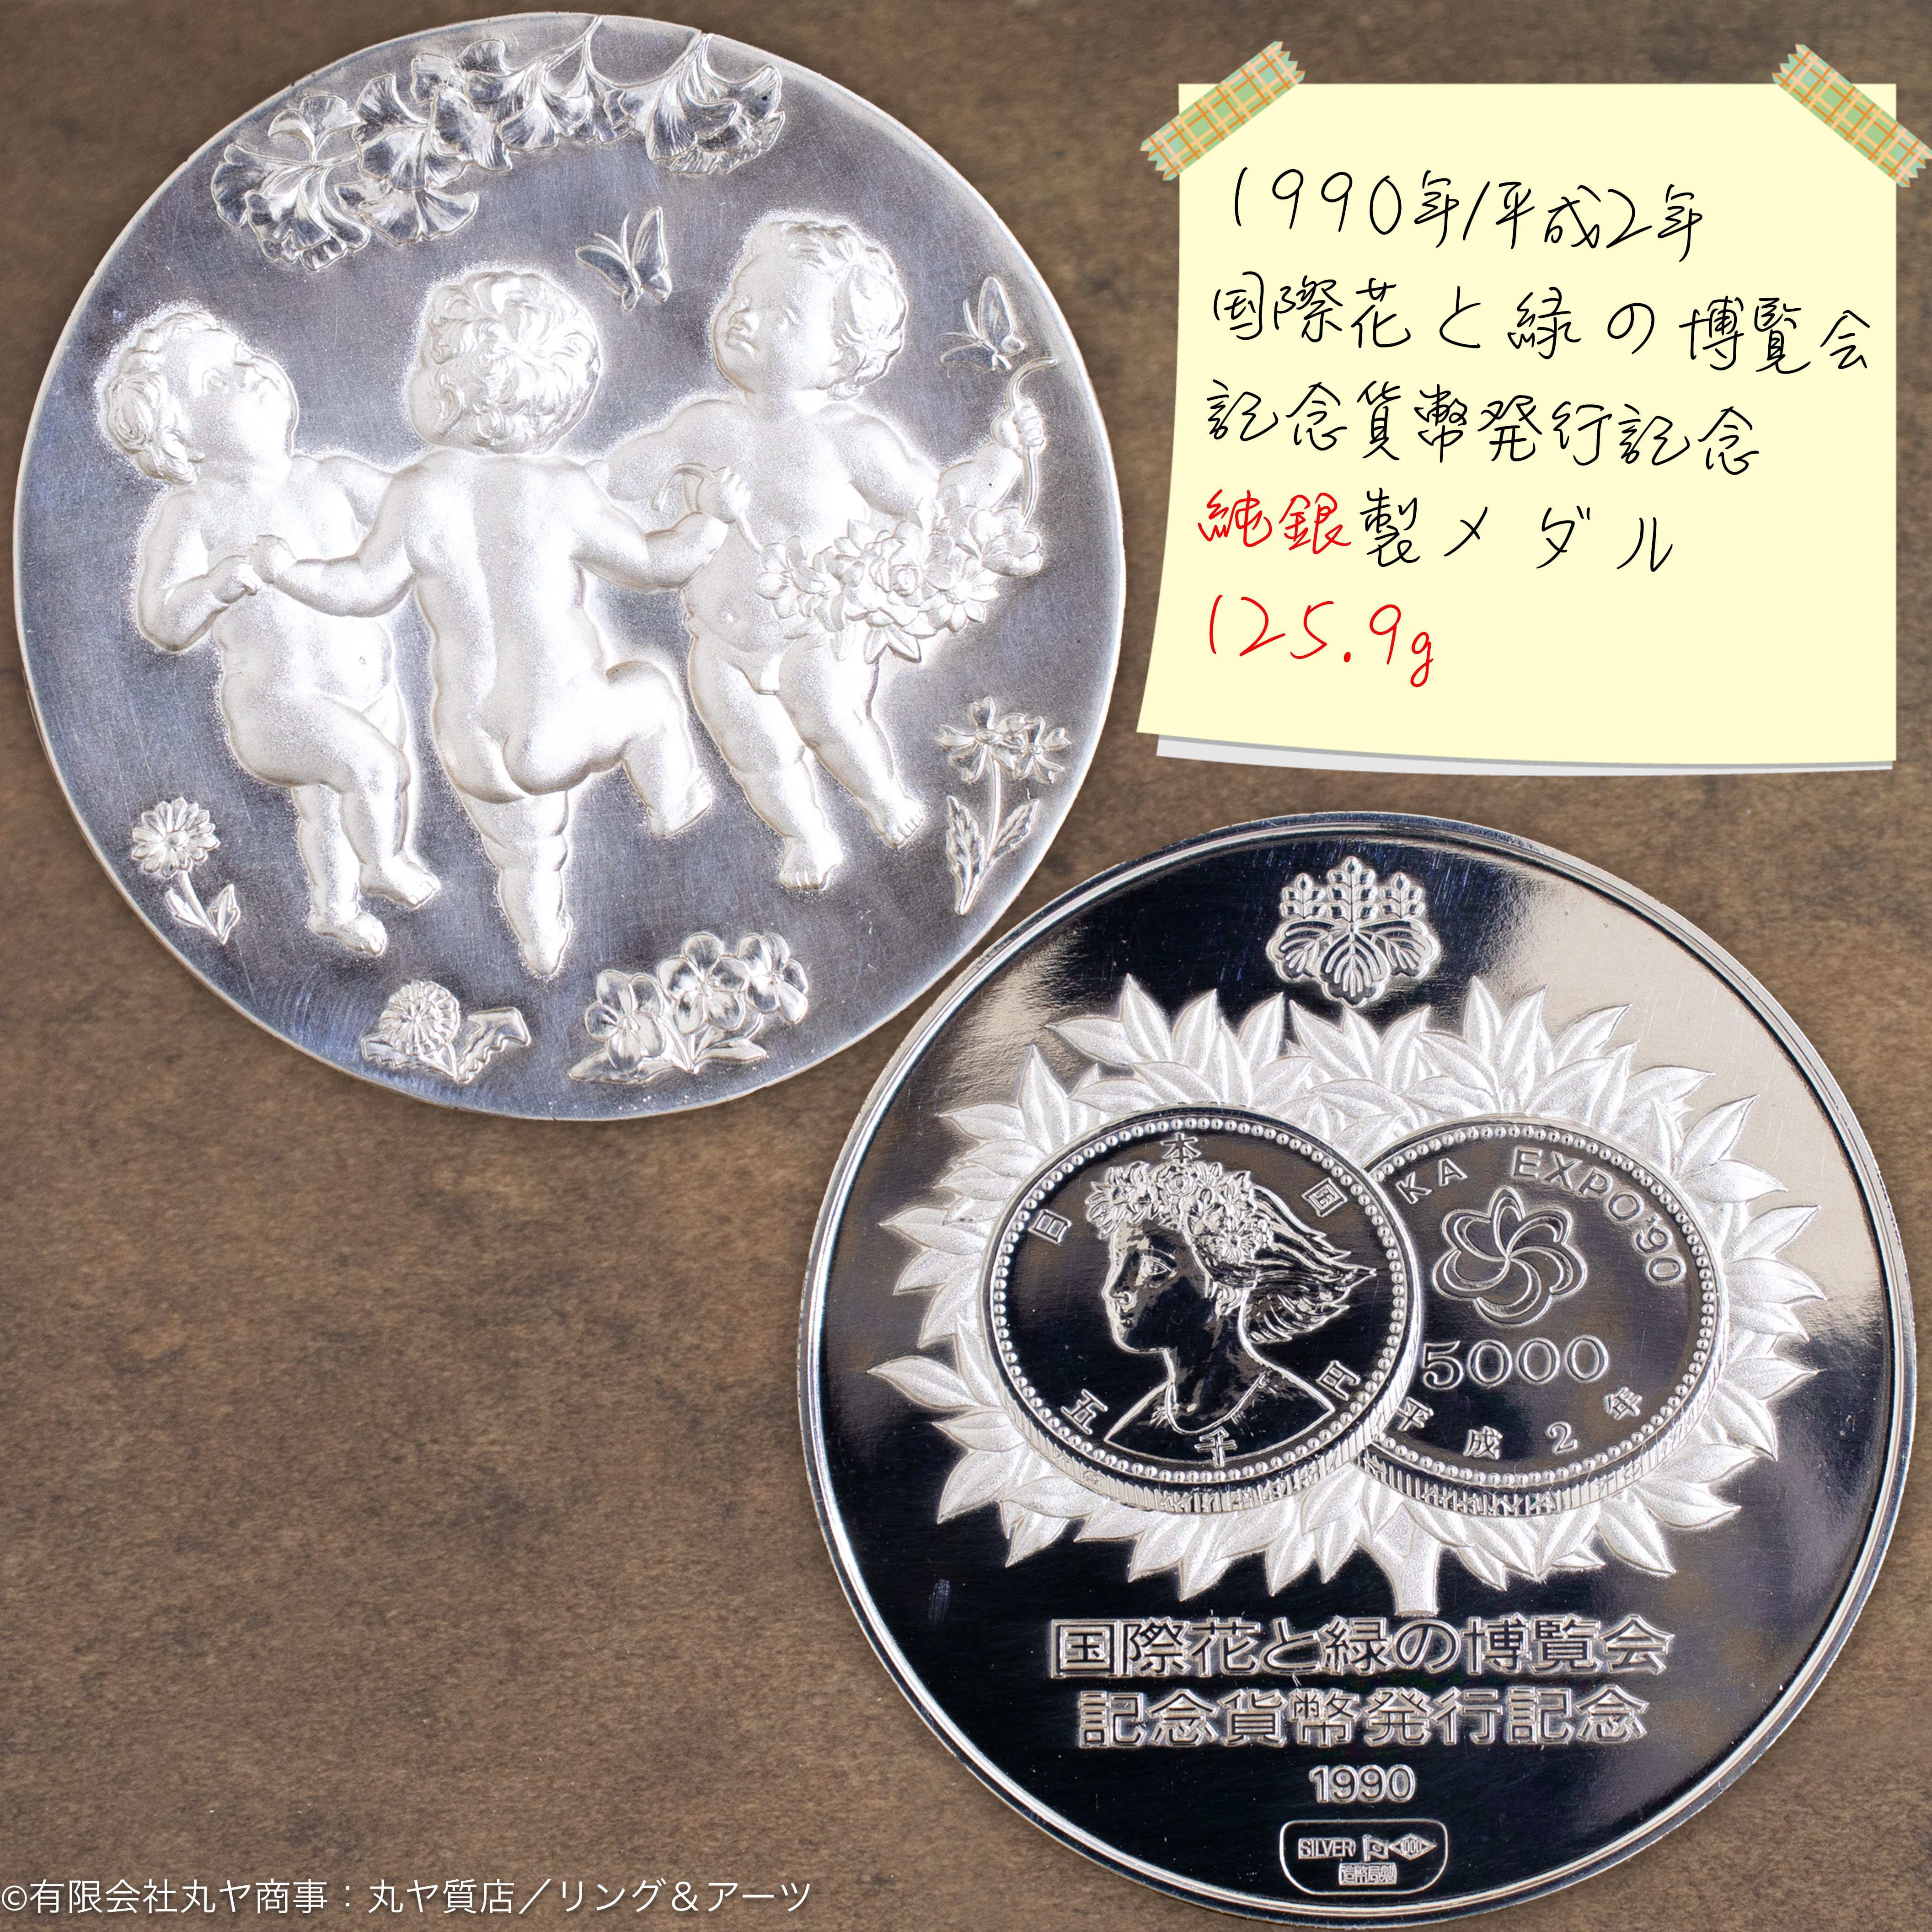 【ラスト1つ】国際花と緑の博覧会 記念貨幣発行記念メダル